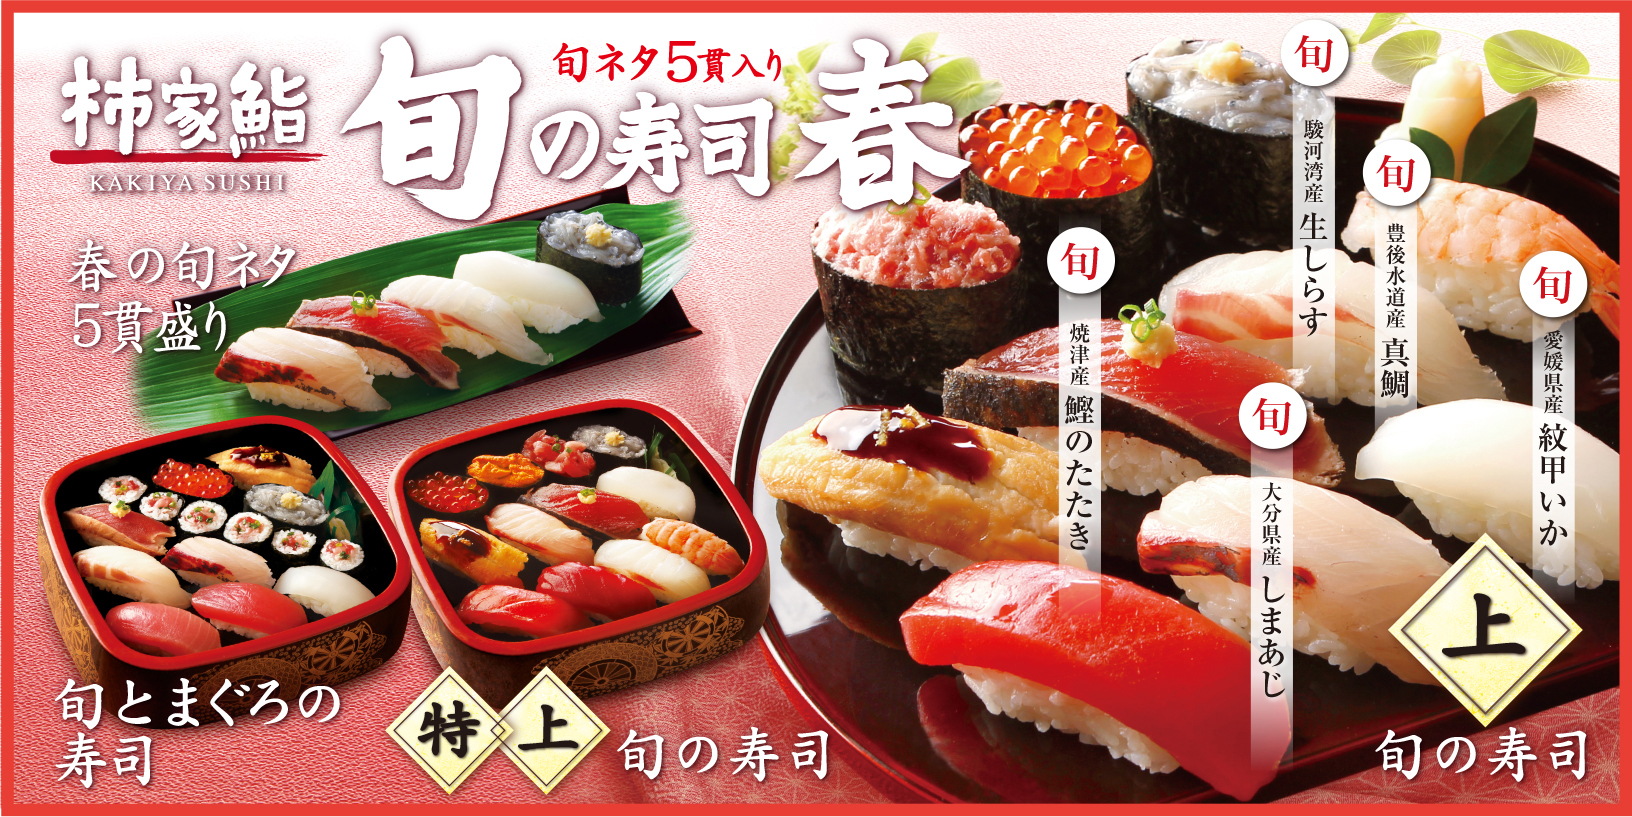 春を感じる寿司ネタを日本各地から仕入れました 真鯛 しまあじ など 柿家鮨の 旬の寿司 春 新発売 株式会社フォーシーズのプレスリリース